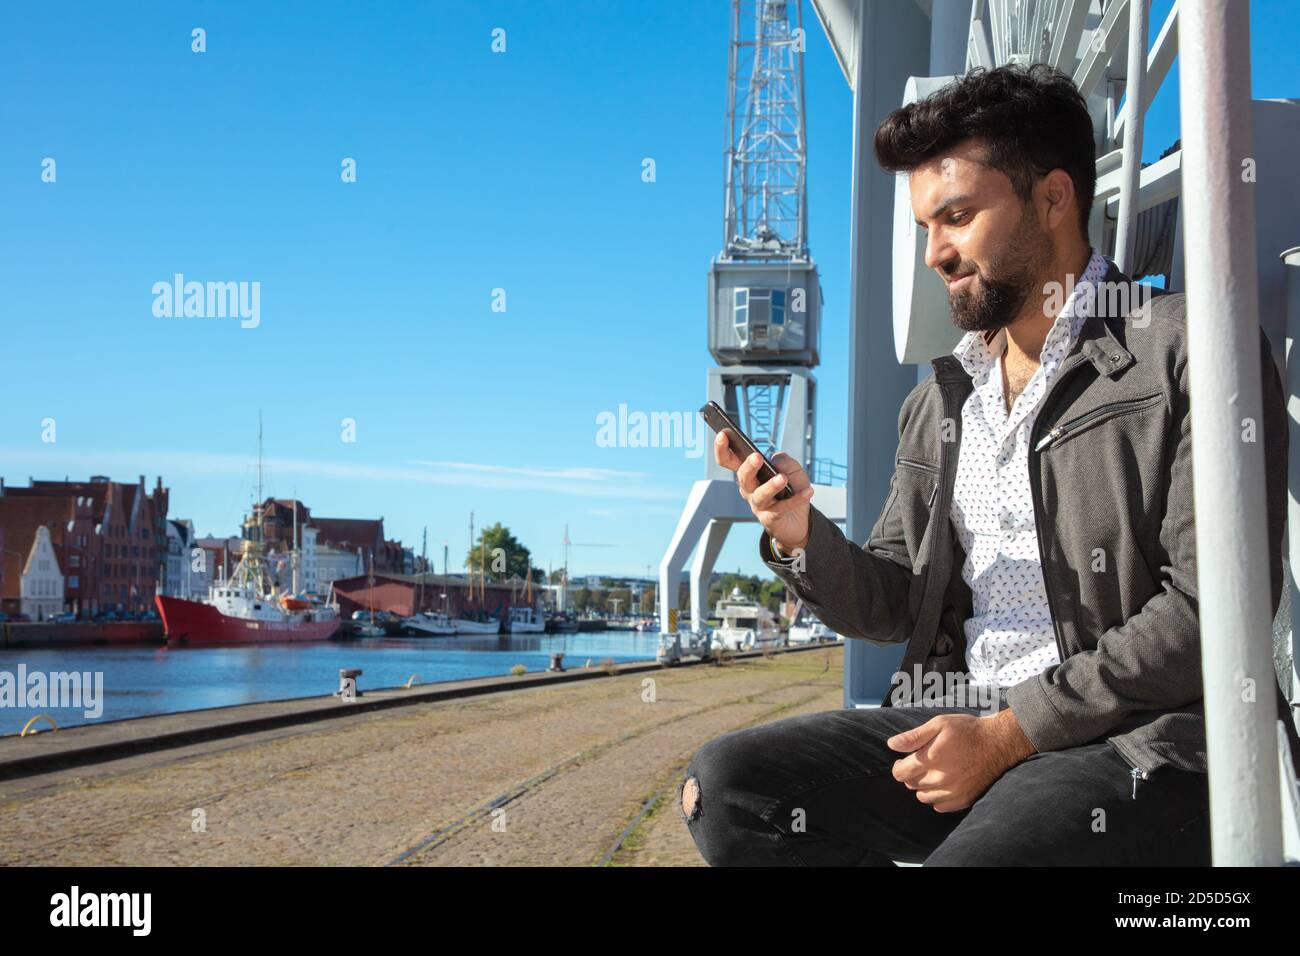 Mann steht fröhlich am Hafen, smartphone in der hand Foto Stock